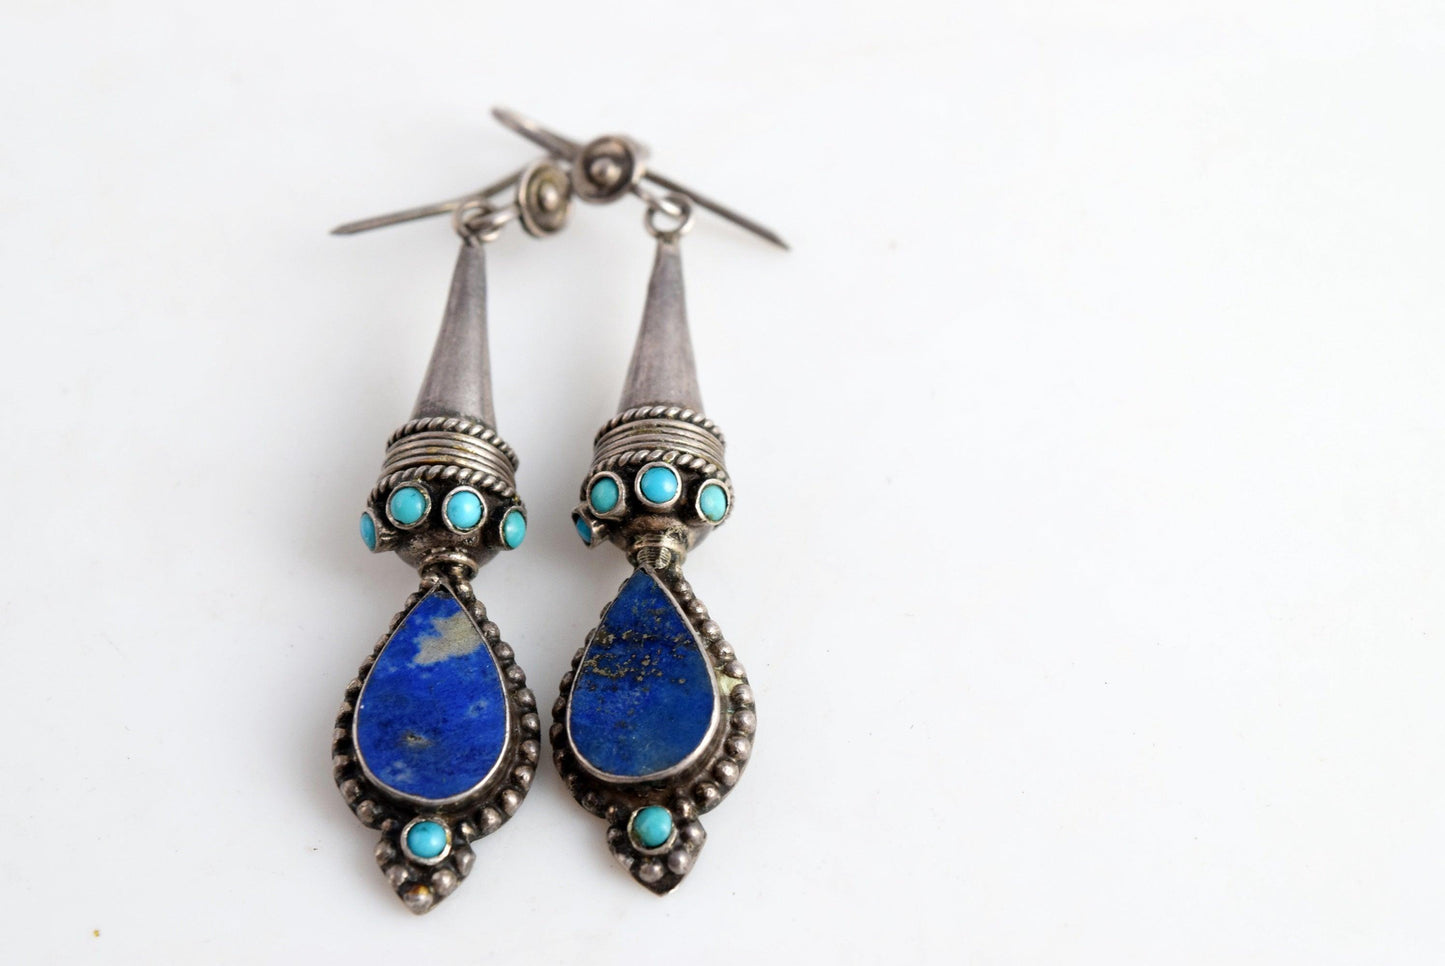 Afghani earrings